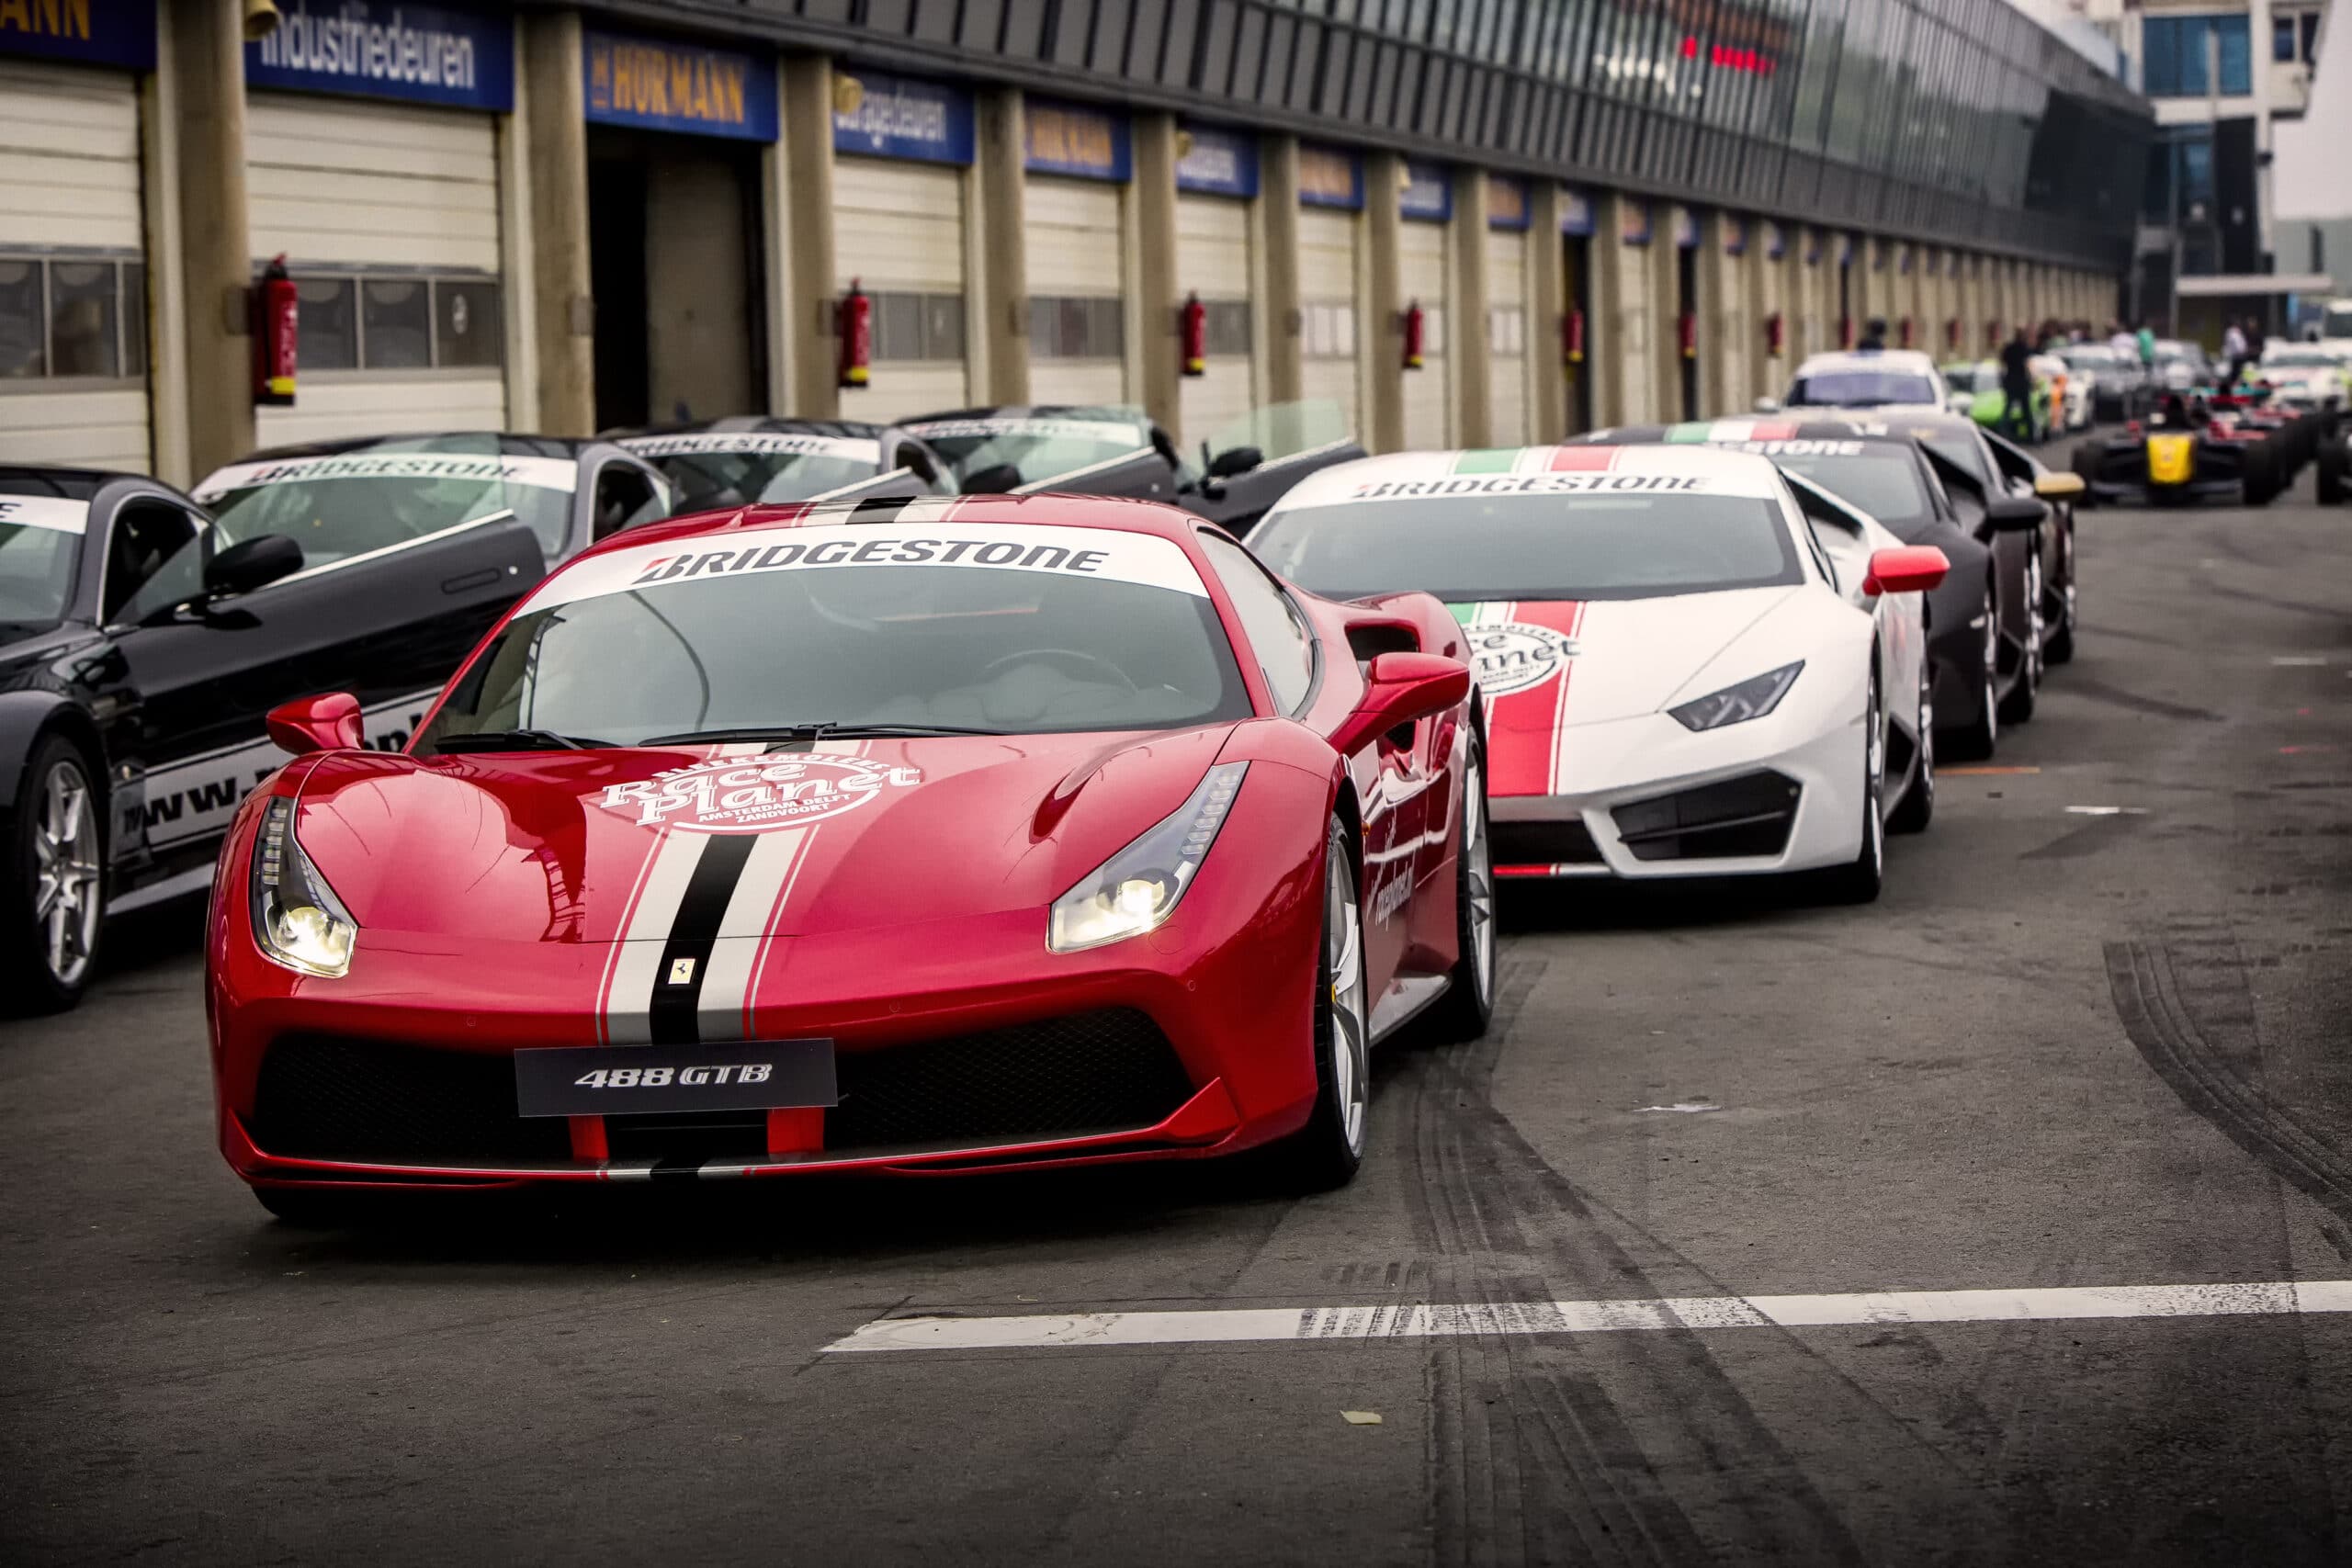 Ferrari 488 GTB, Lamborghini's, Aston Martin en andere sportwagen staan klaar voor deelnemers aan de Platinum Experience op Circuit Zandvoort.